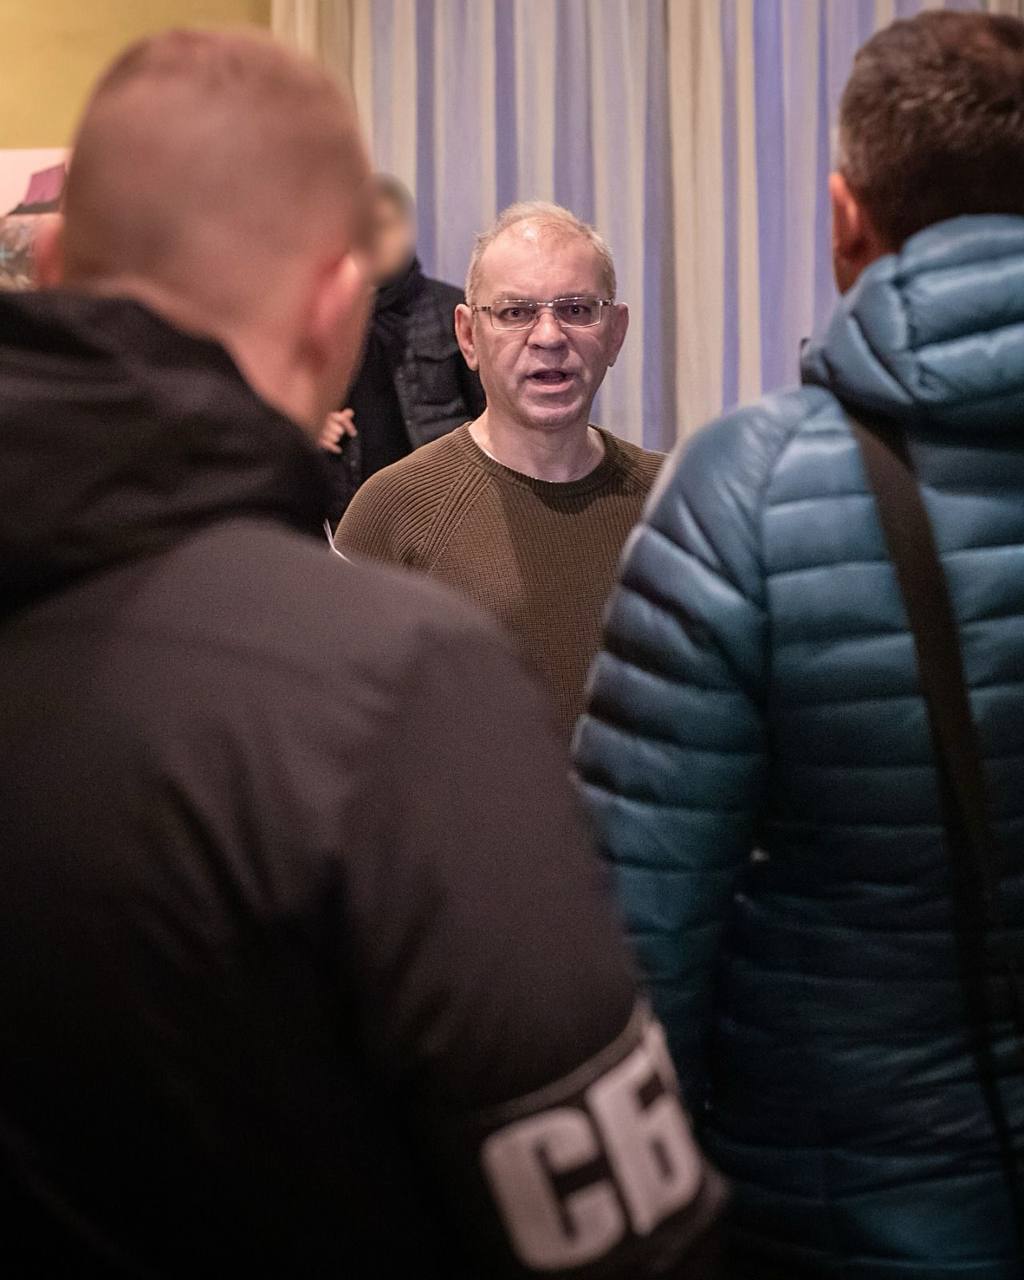 НАБУ, САП и СБУ объявили подозрение и провели обыск у Пашинского: экс-нардеп прокомментировал